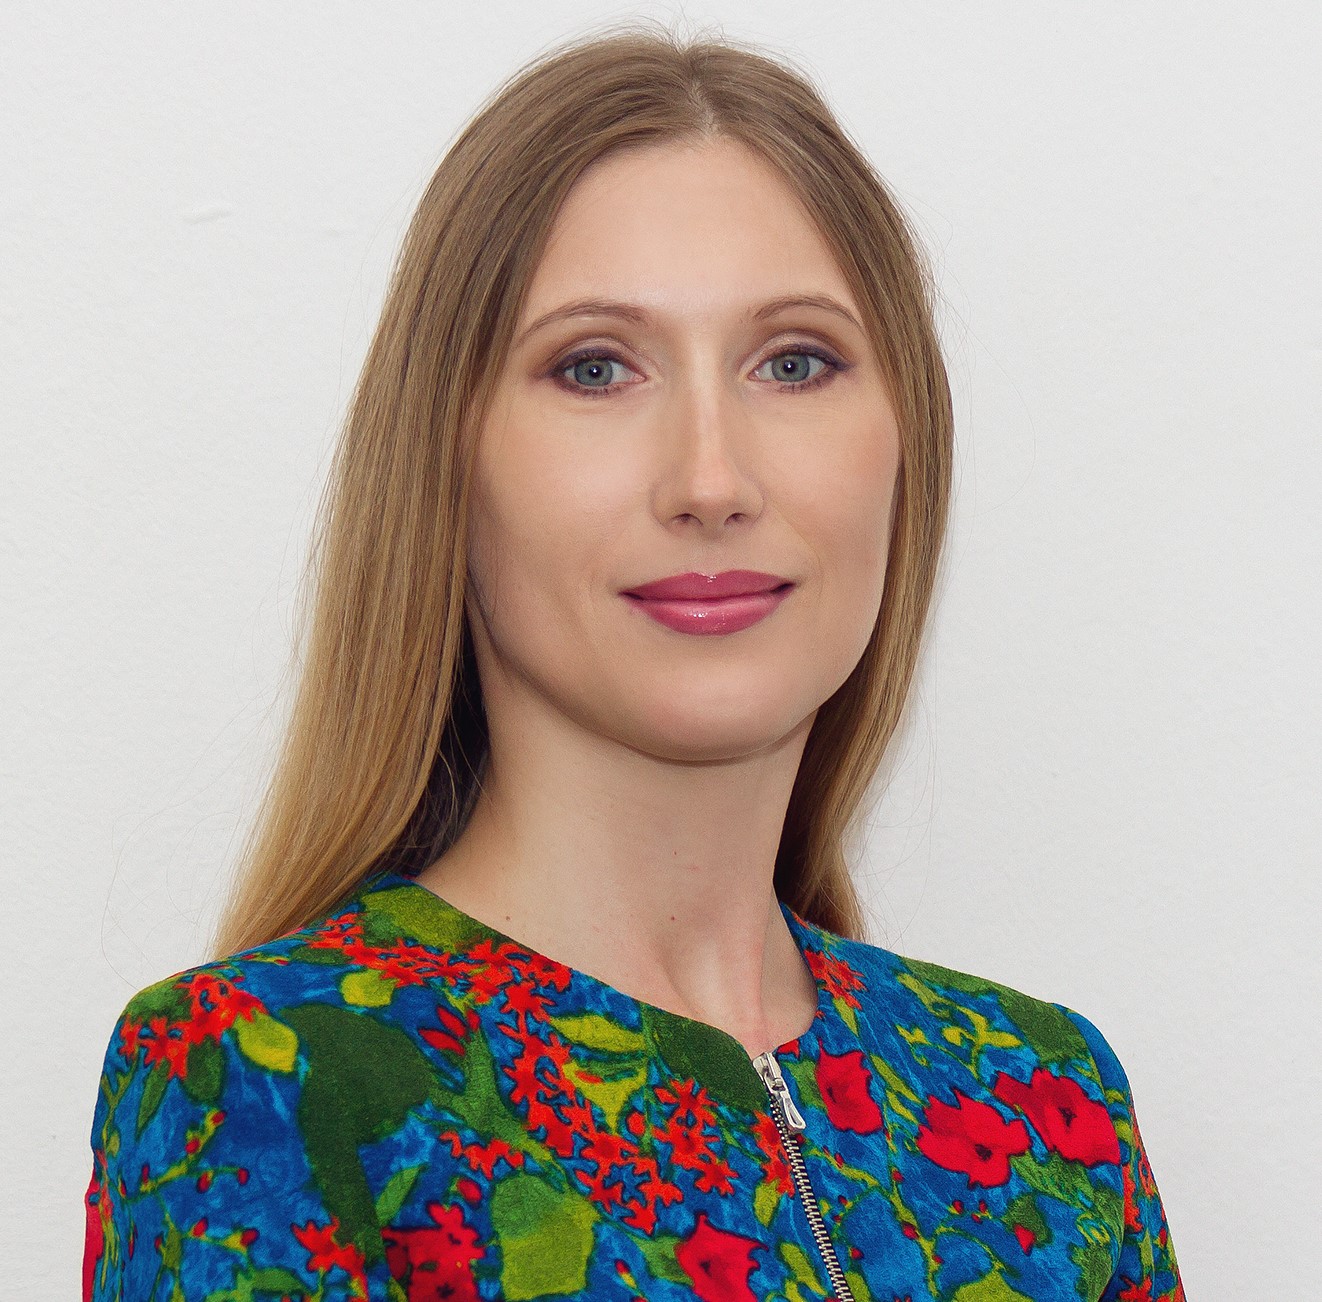 Руководитель НОЦ «Онлайн-платформы в языковом образовании» Наталия Захарова